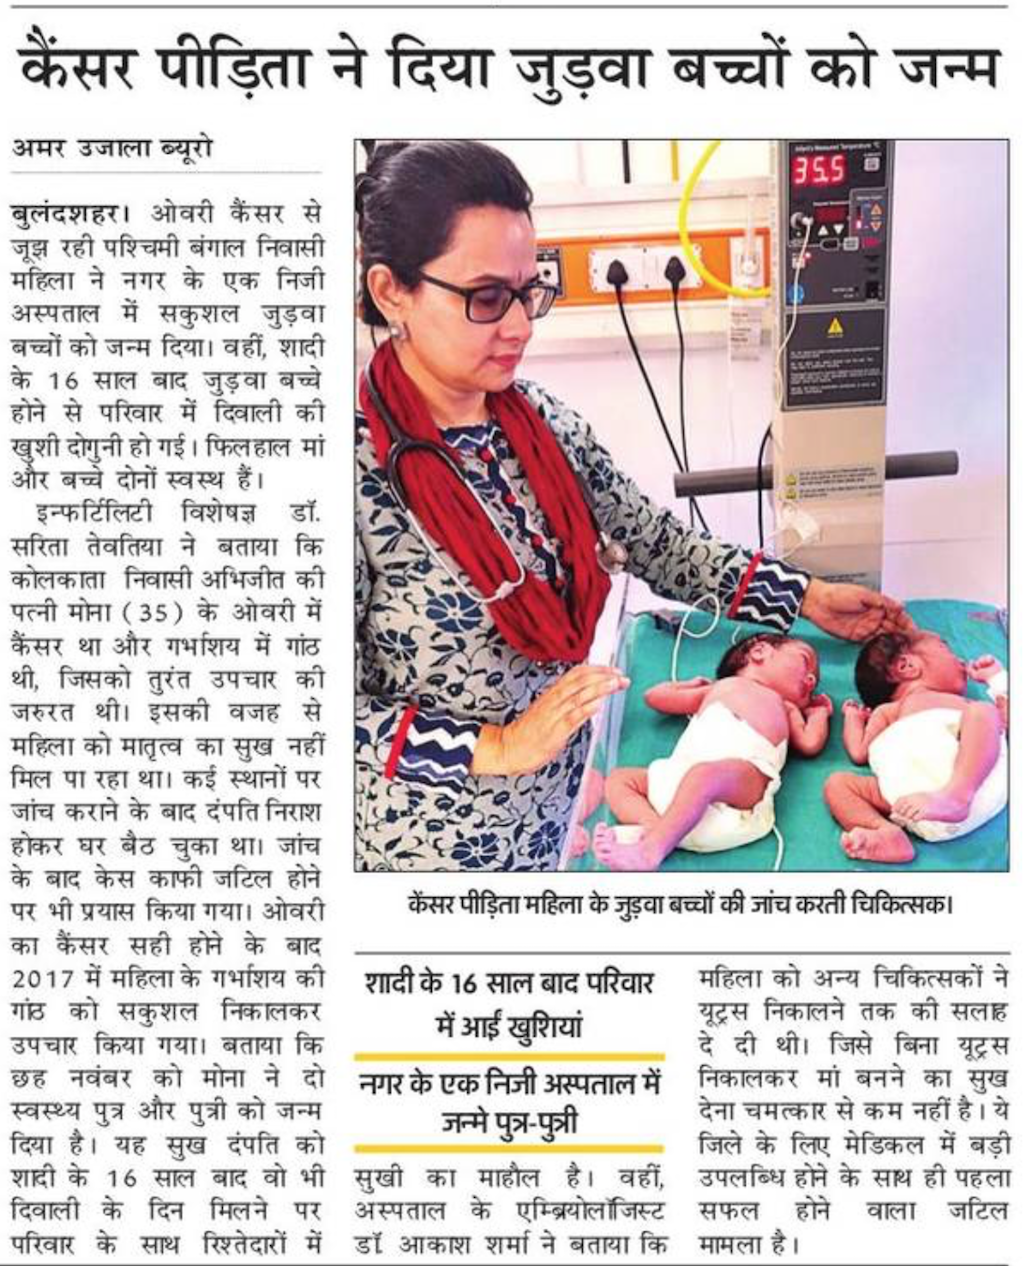 Best Fertility Clinic in Noida, Test Tube Baby Center in Noida, Infertility Treatment in Noida, IVF Centre in Noida, Fertility Centre in Noida, IVF Doctor in Noida, IVF Fertility Centre in Noida